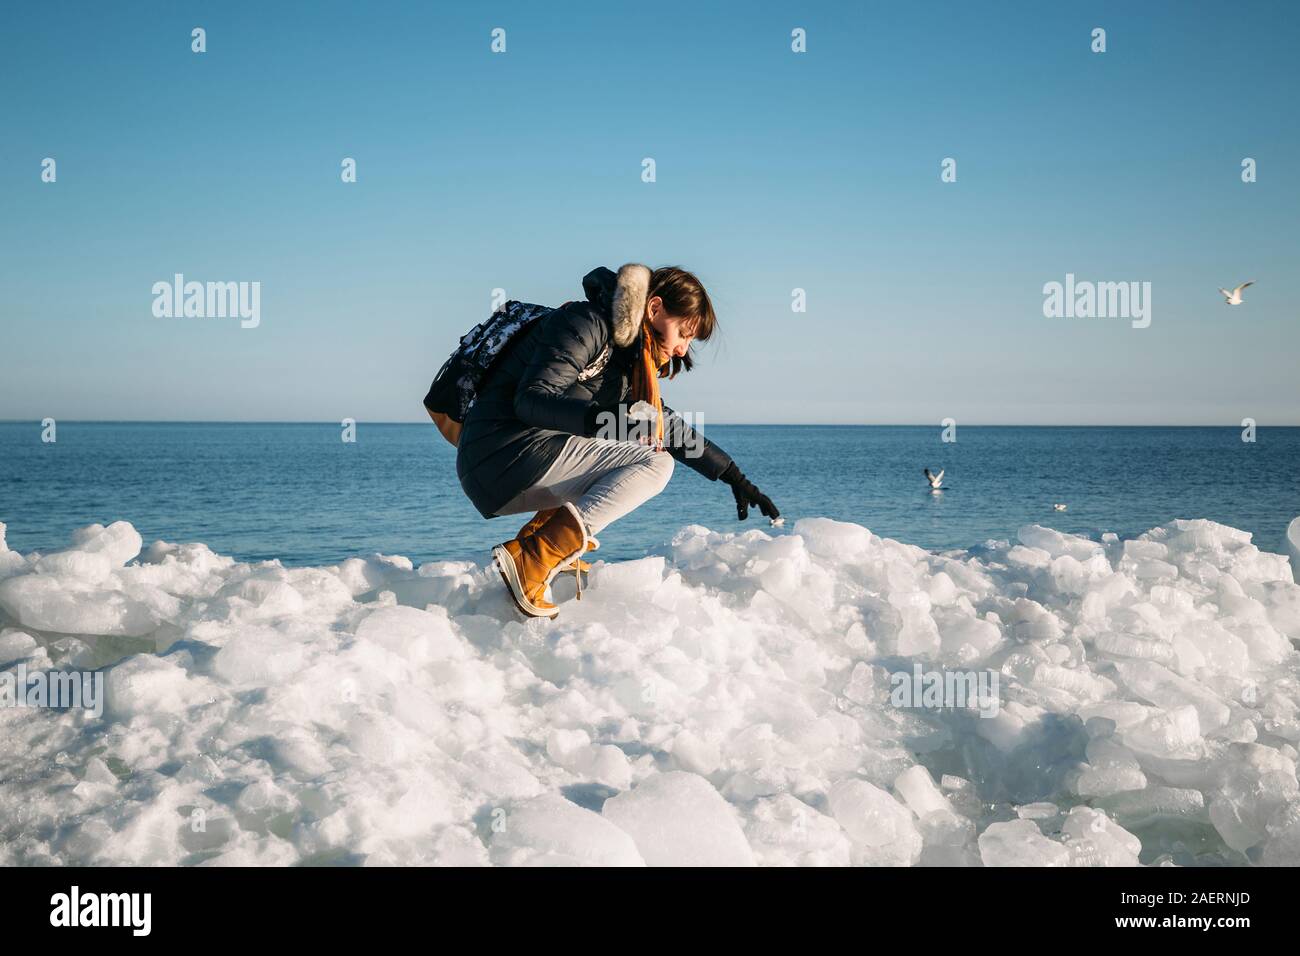 Young smiling woman sitting sur le dessus de la glace de mer bloque sur la côte holding broken morceau de glace, avec une mer bleue et le ciel et l'arrière-plan Banque D'Images